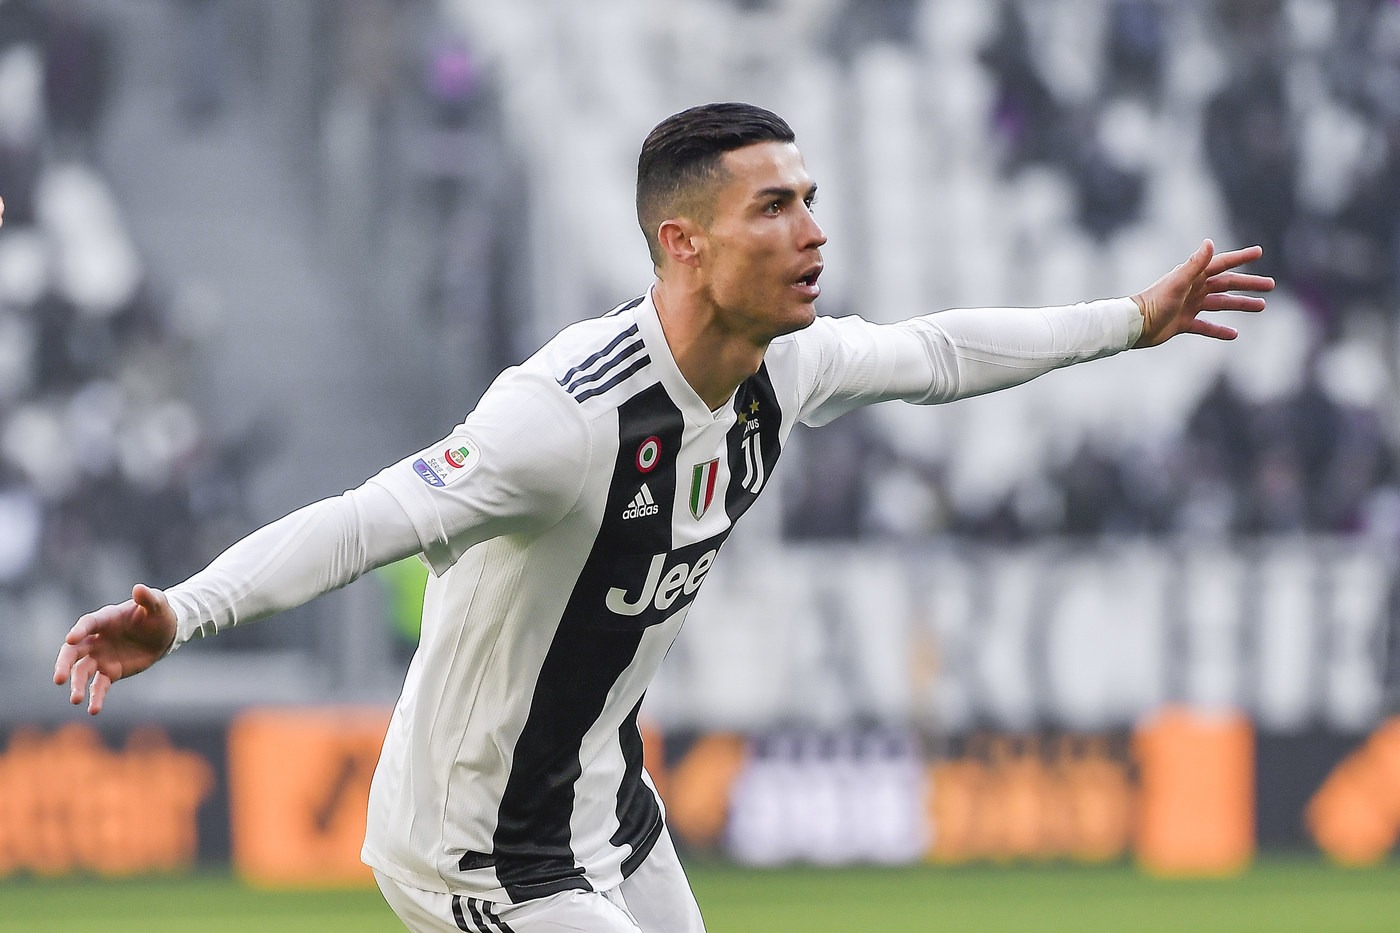 Serie A, Juventus-Chievo Verona lunedì 21 gennaio: analisi e pronostico della 20ma giornata del campionato italiano